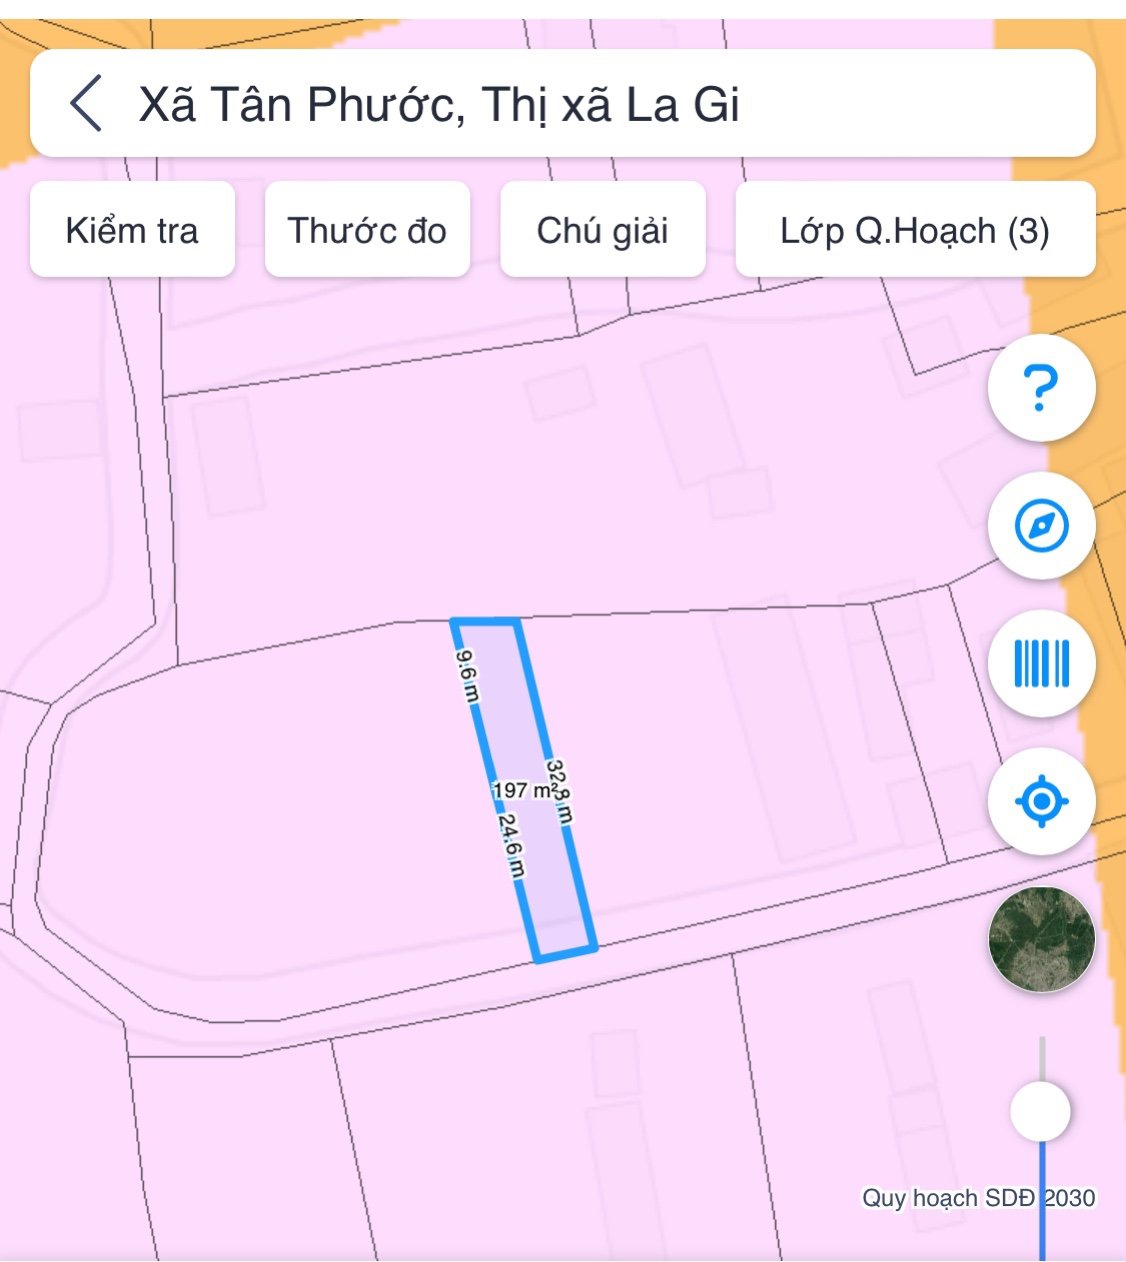 Bán đất thổ cư gần biển thị xã LaGi, 6x32 Full thổ cư, Xã Tân Phước. sổ riêng, GIÁ NGỢP 4